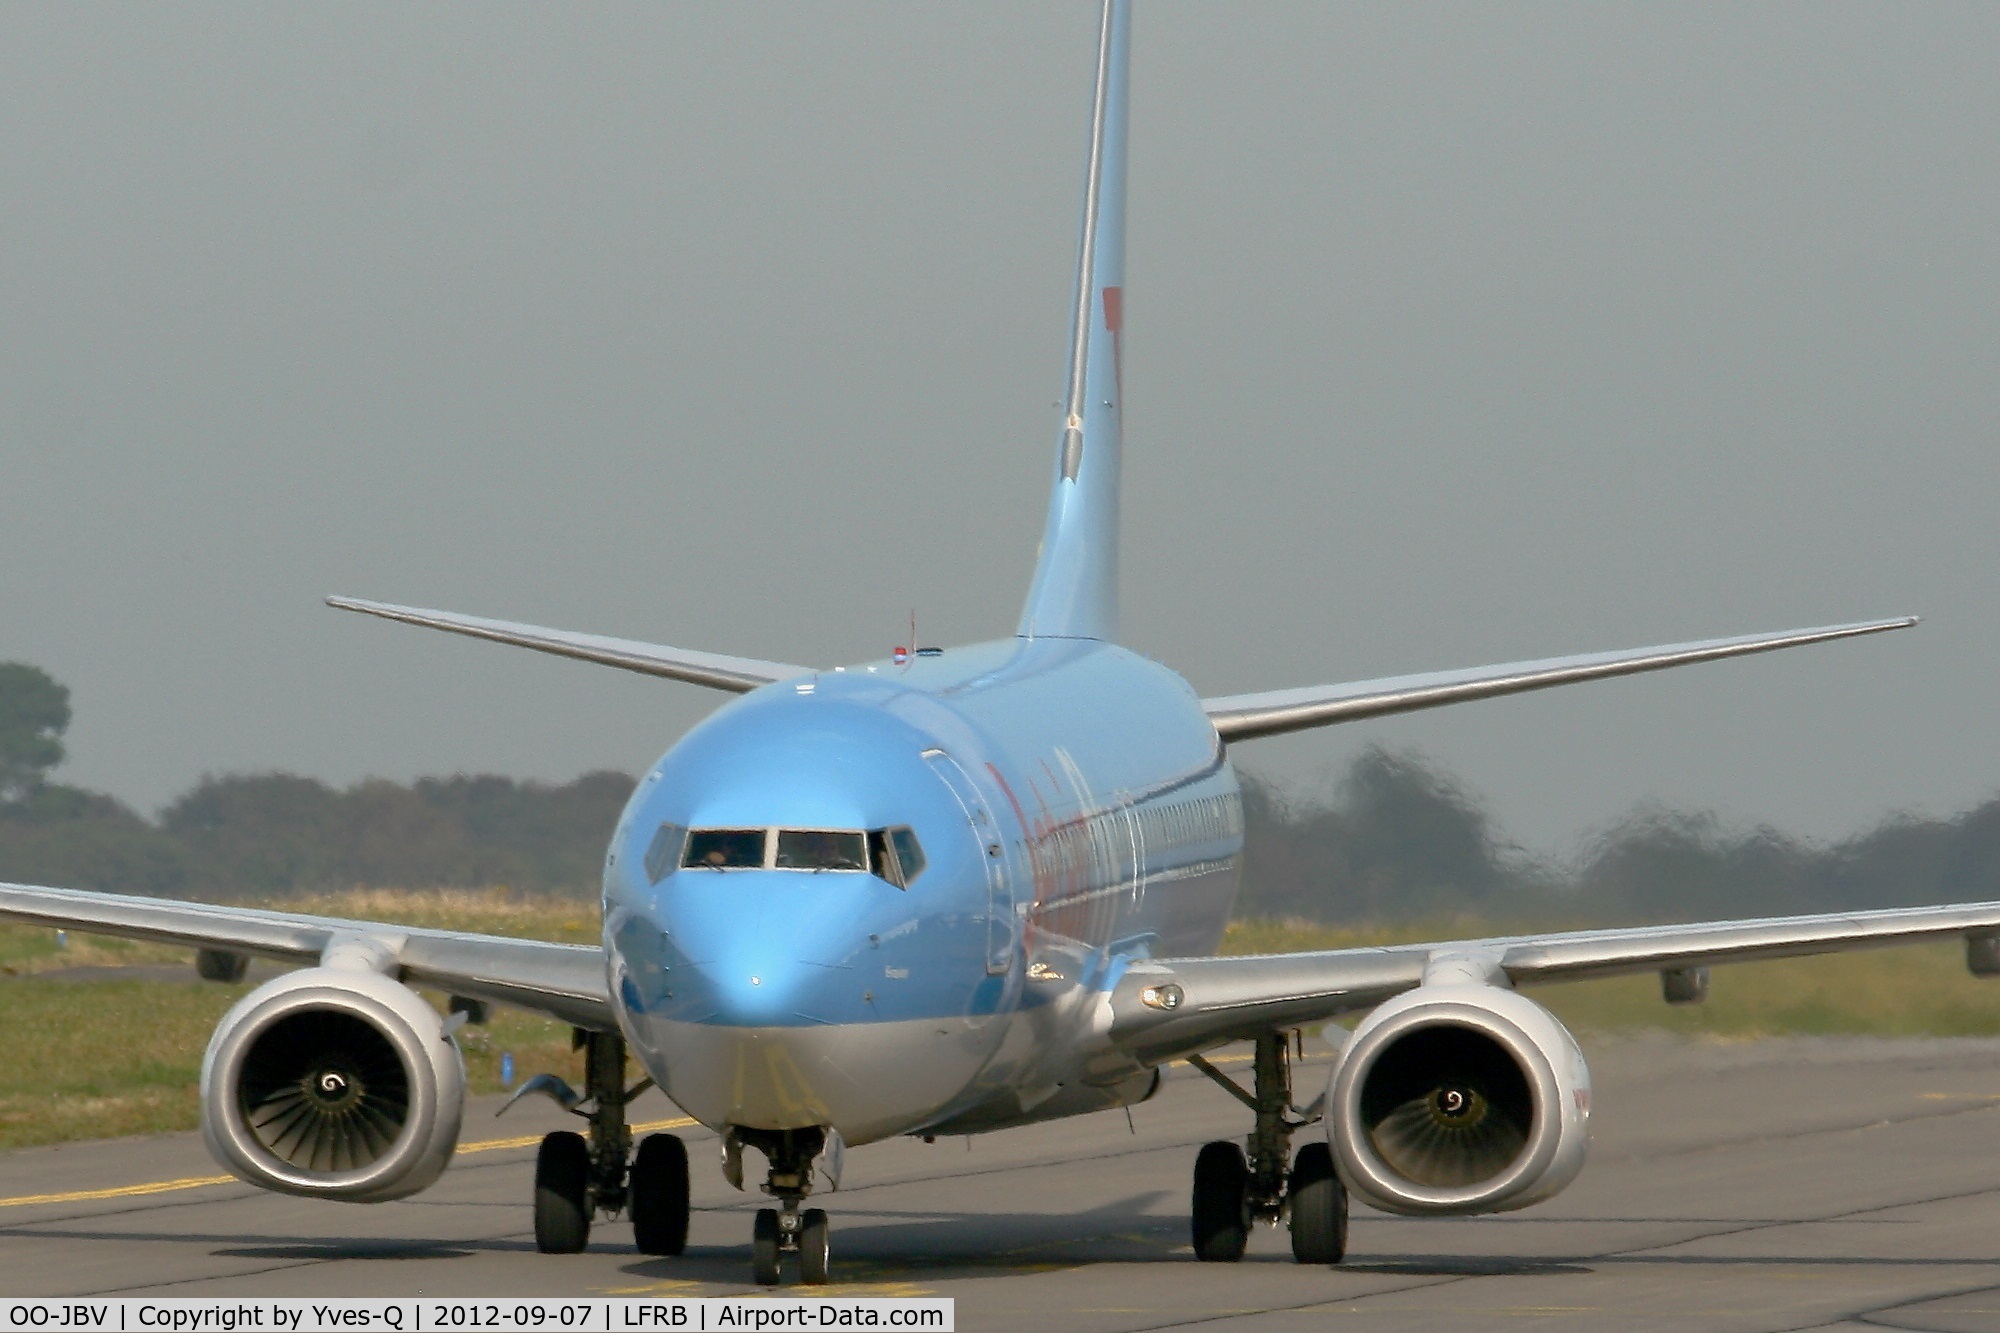 OO-JBV, 1999 Boeing 737-8K5 C/N 27990, Boeing 737-8K5, Taxiing to boarding area, Brest-Guipavas Airport (LFRB-BES)